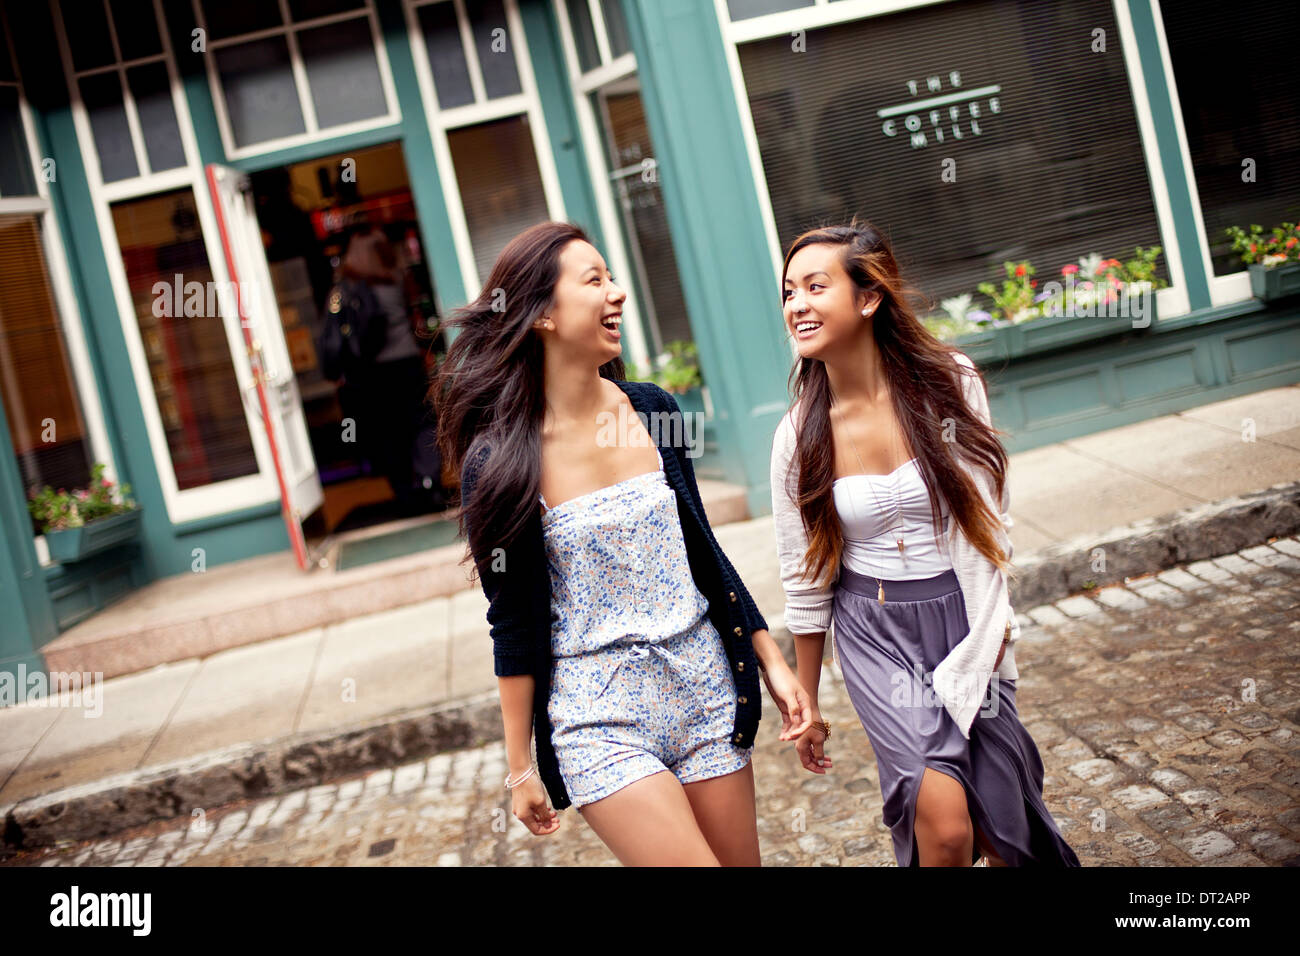 Zwei Mädchen im Teenageralter zu Fuß über Straße, Café im Hintergrund Stockfoto